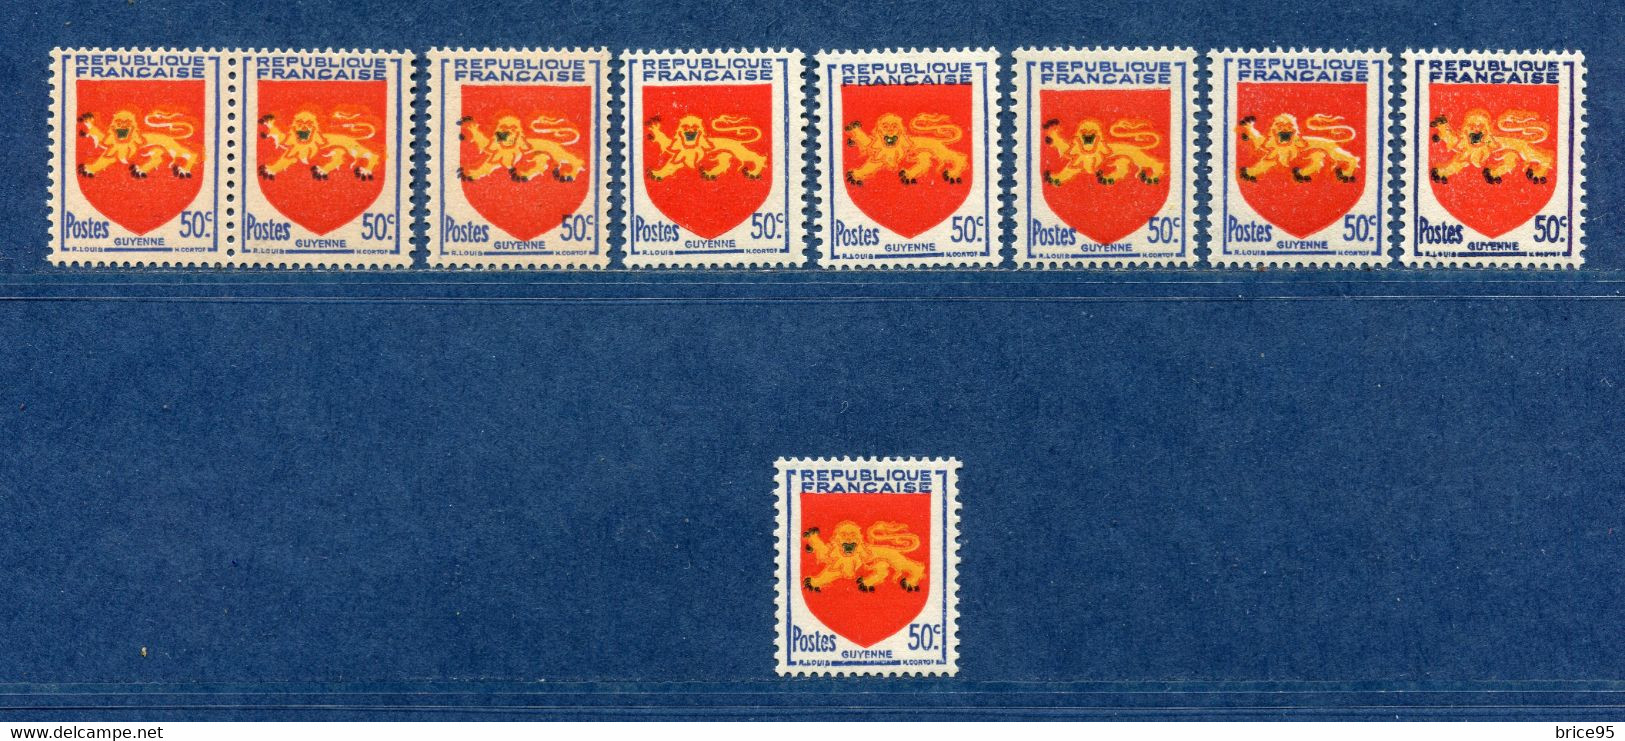 ⭐ France - Variété - YT N° 835 - Couleurs - Pétouilles - Neuf Sans Charnière - Timbre Du Bas Avec Charnière - 1949 ⭐ - Unused Stamps